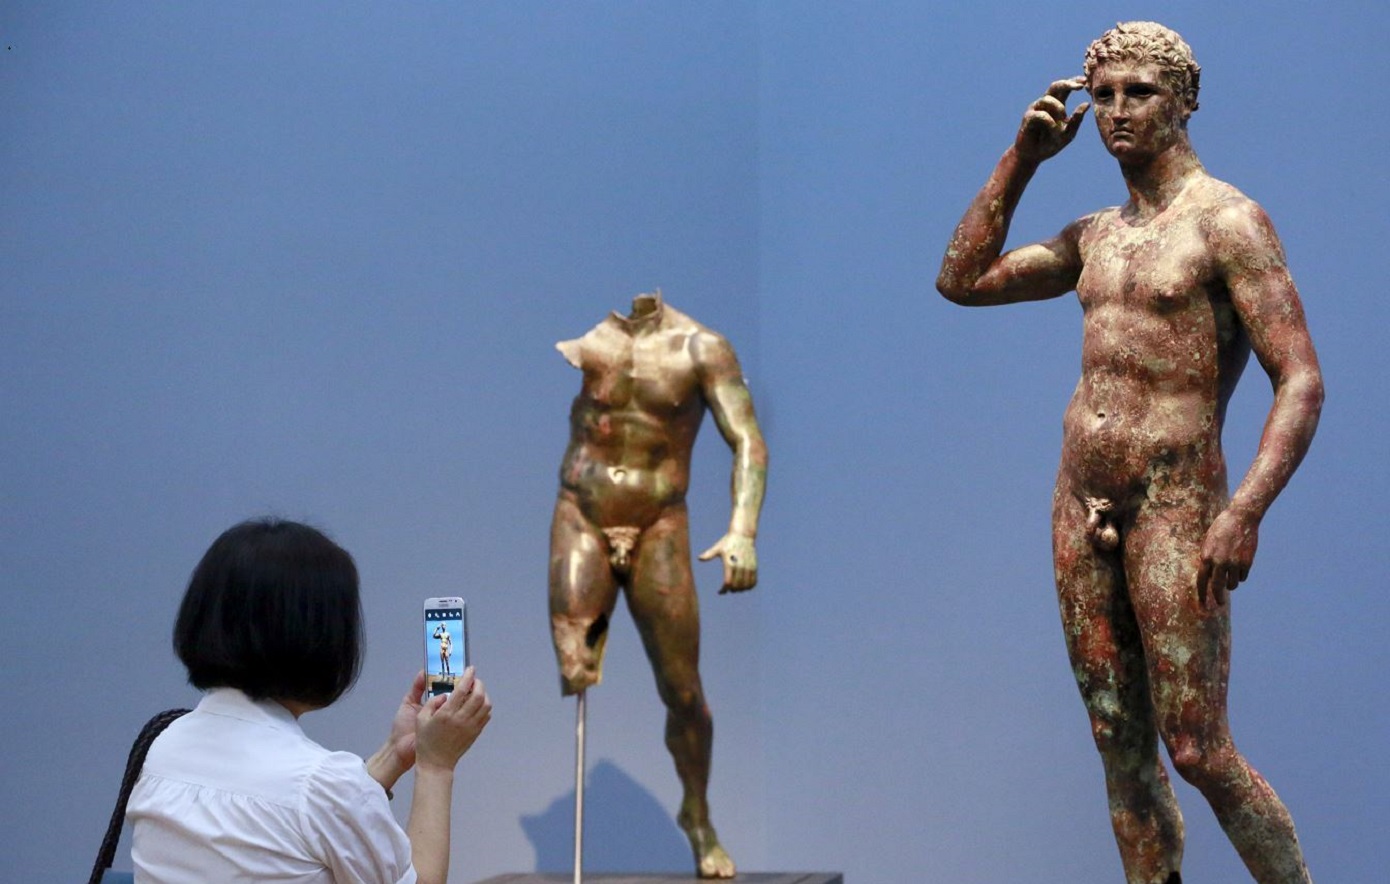 Οι αρχαίοι Ολυμπιονίκες θα μπορούσαν να συναγωνιστούν τους σύγχρονους Ολυμπιονίκες;